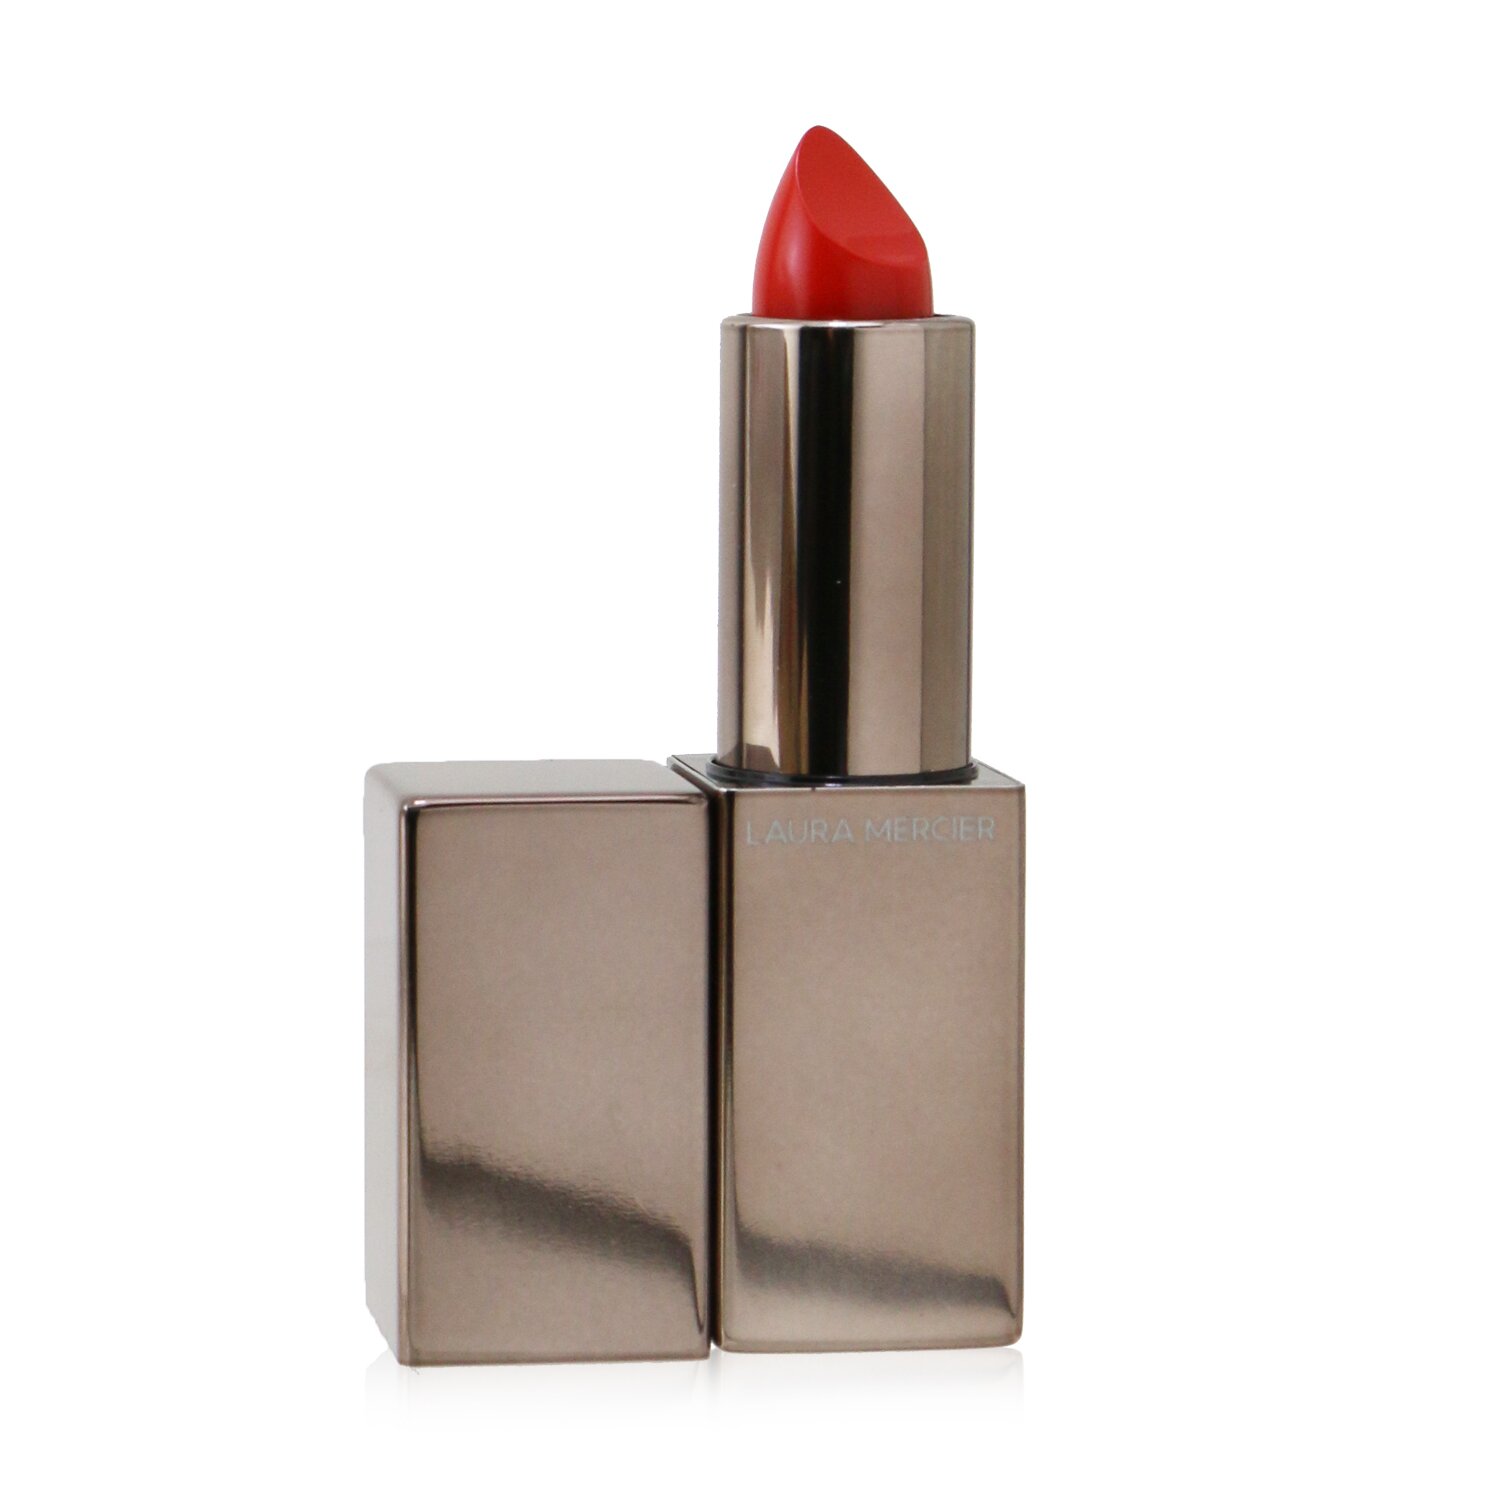 Photos - Lipstick & Lip Gloss Laura Mercier Rouge Essentiel Silky Creme Lipstick - Coral Vif (bright cor 